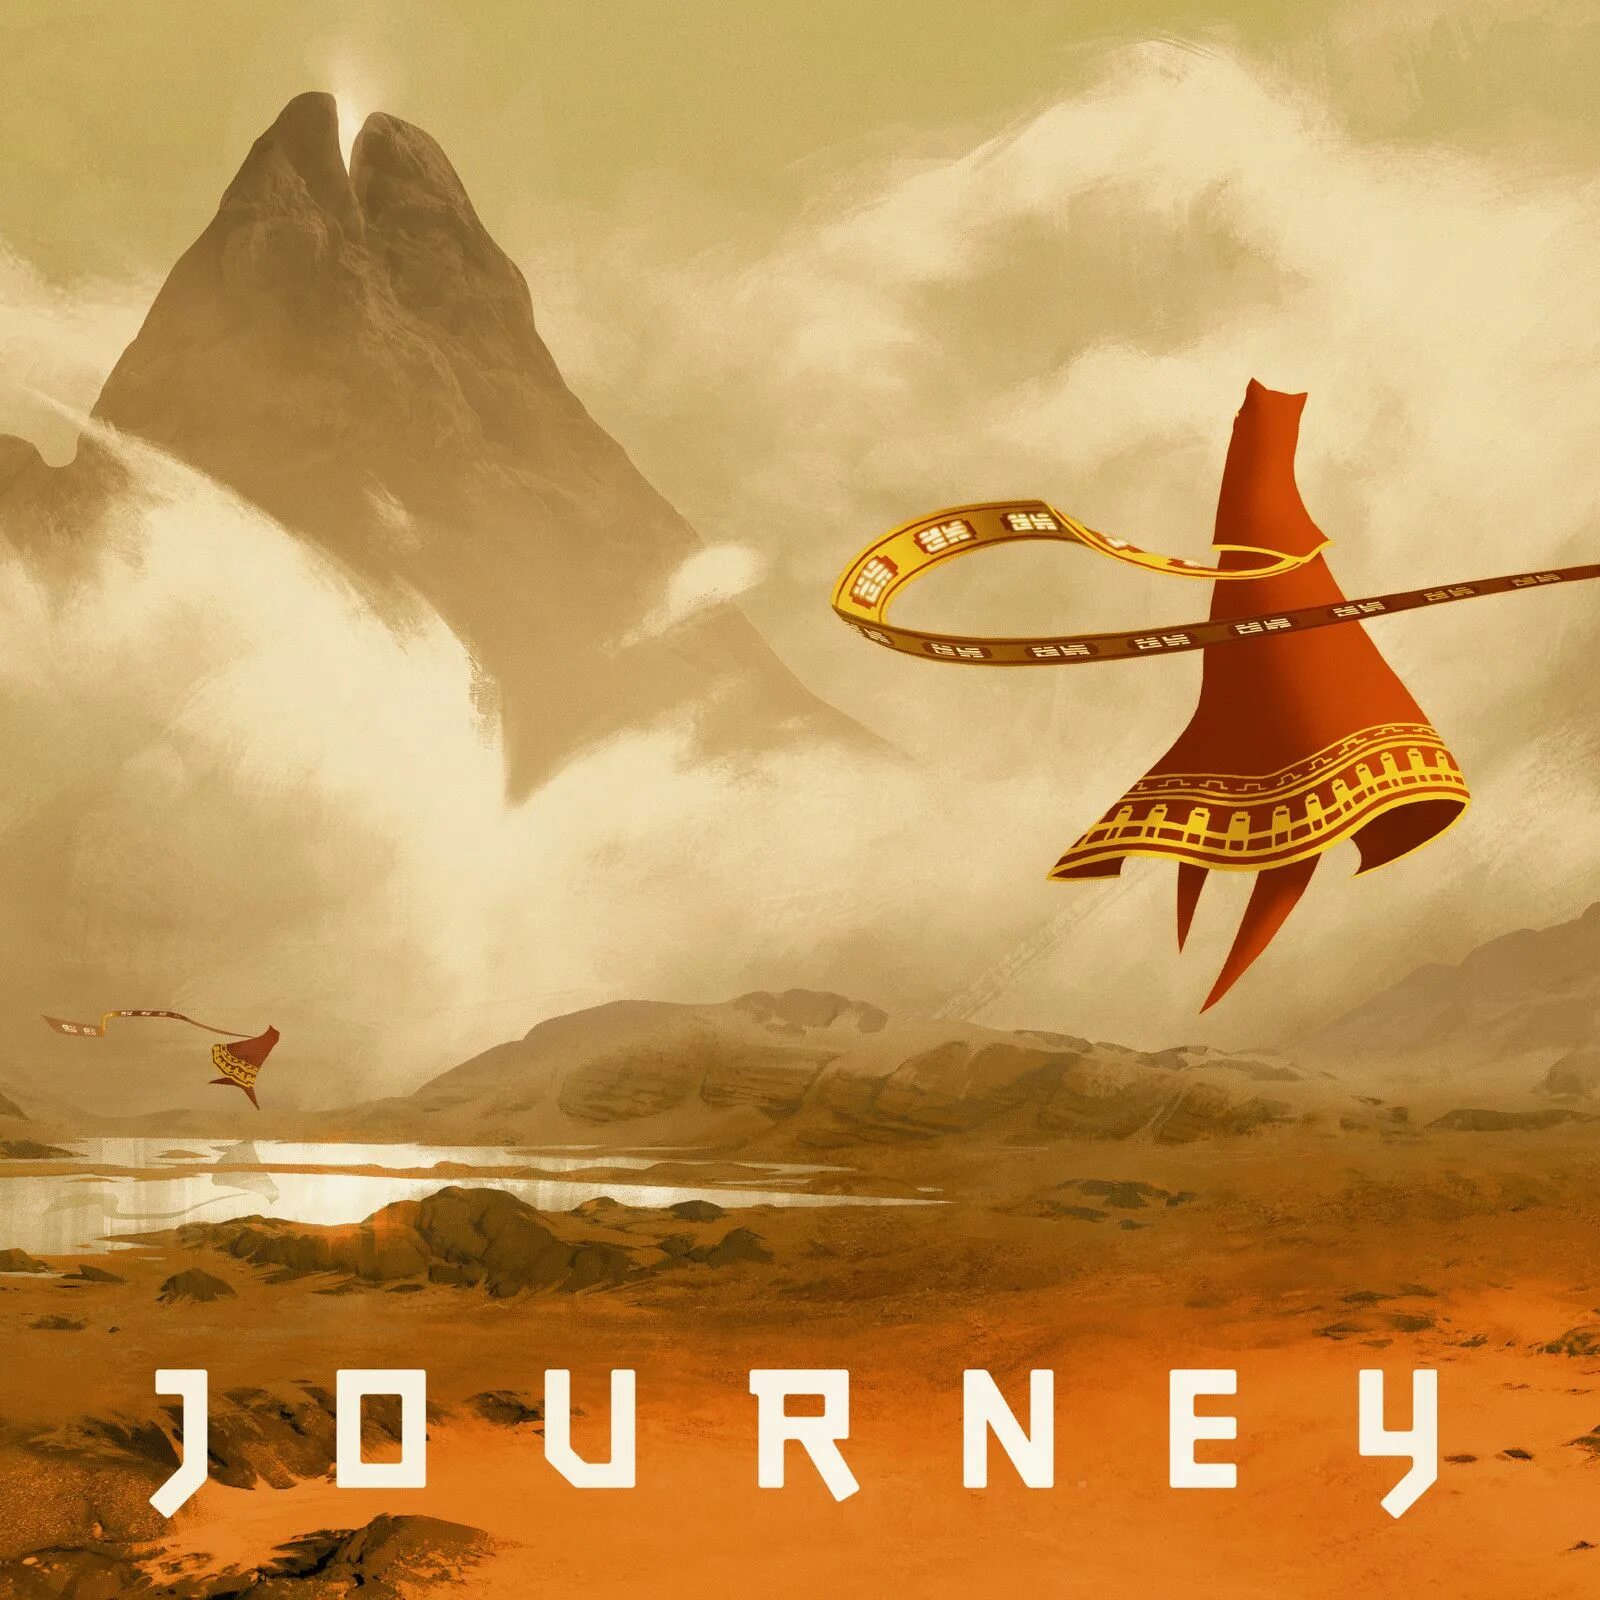 Tales journey. Journey (игра, 2012). Journey thatgamecompany. Путешествие игра Journey. Джорни путешествие игра.